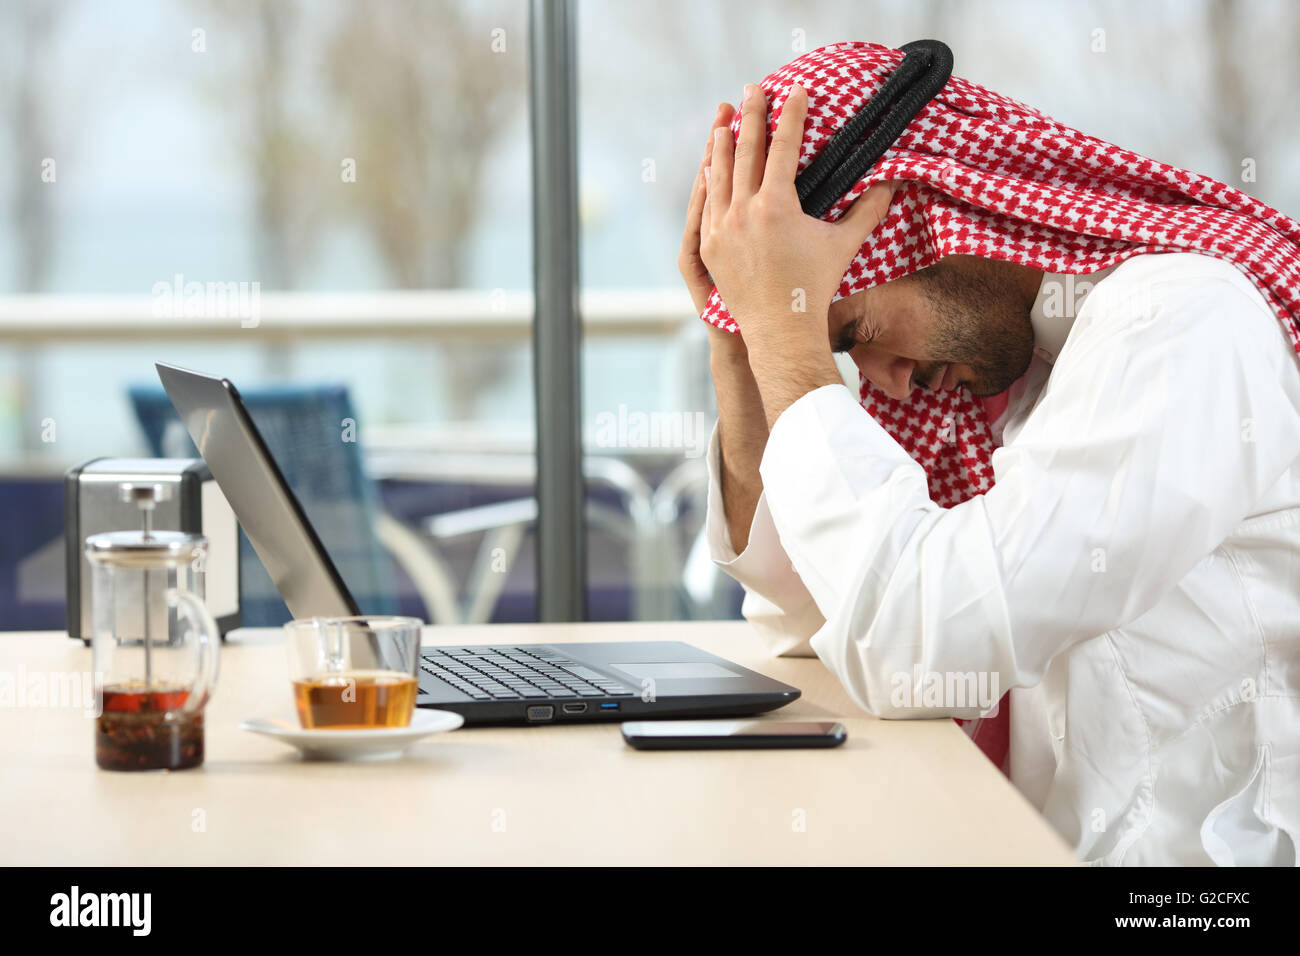 Profil von einem verzweifelten und allein Arabische saudi Mann mit einen Laptop online in einem Café mit einem Fenster im Hintergrund Stockfoto